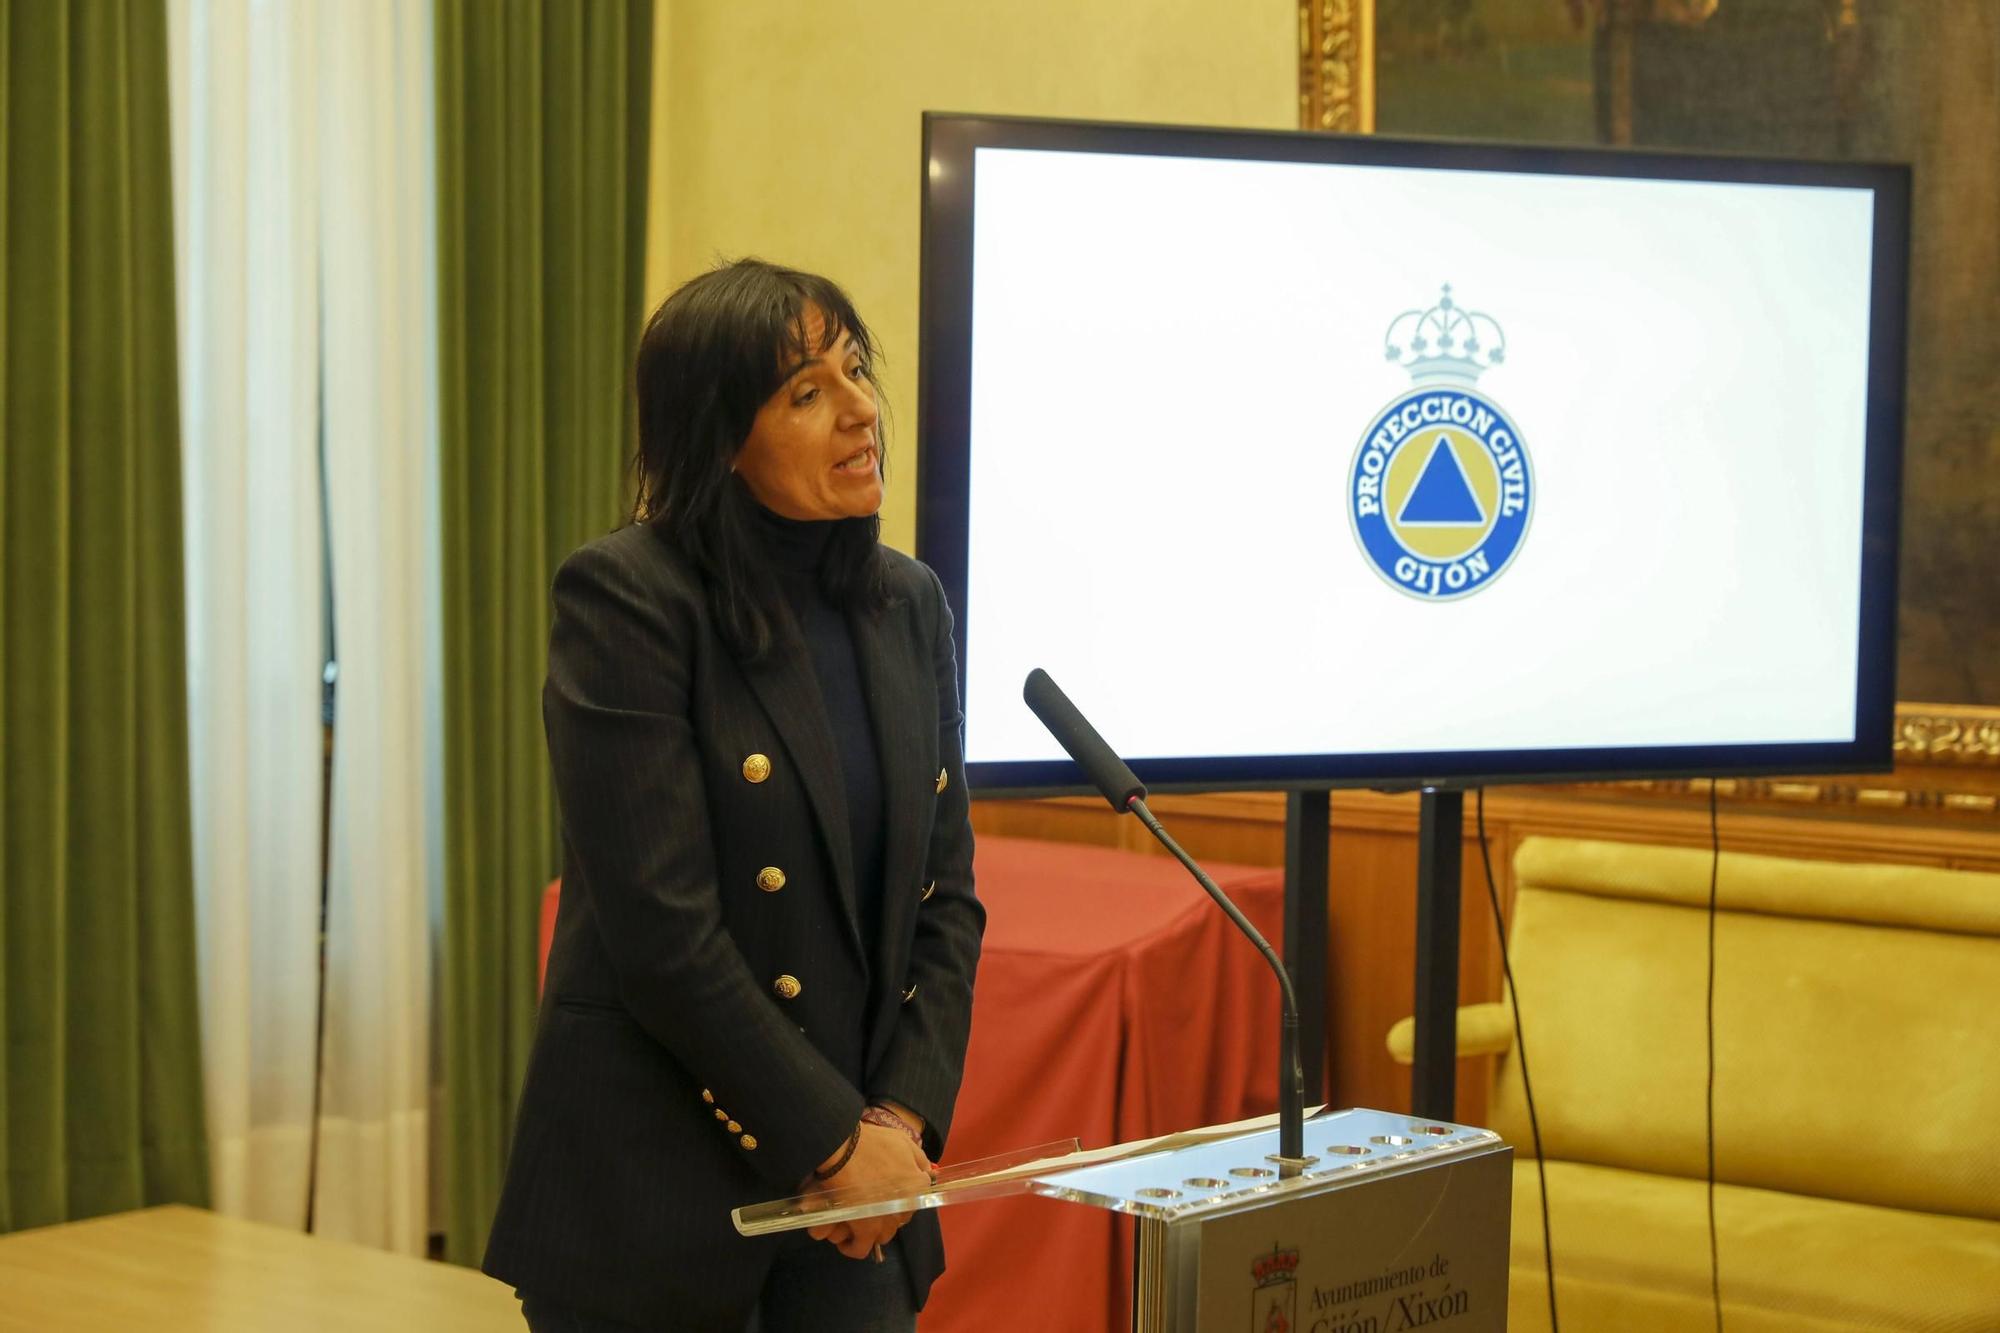 Emotivo homenaje a Inés Sánchez, la voluntaria de Protección Civil gijonesa fallecida en un accidente de tráfico en León